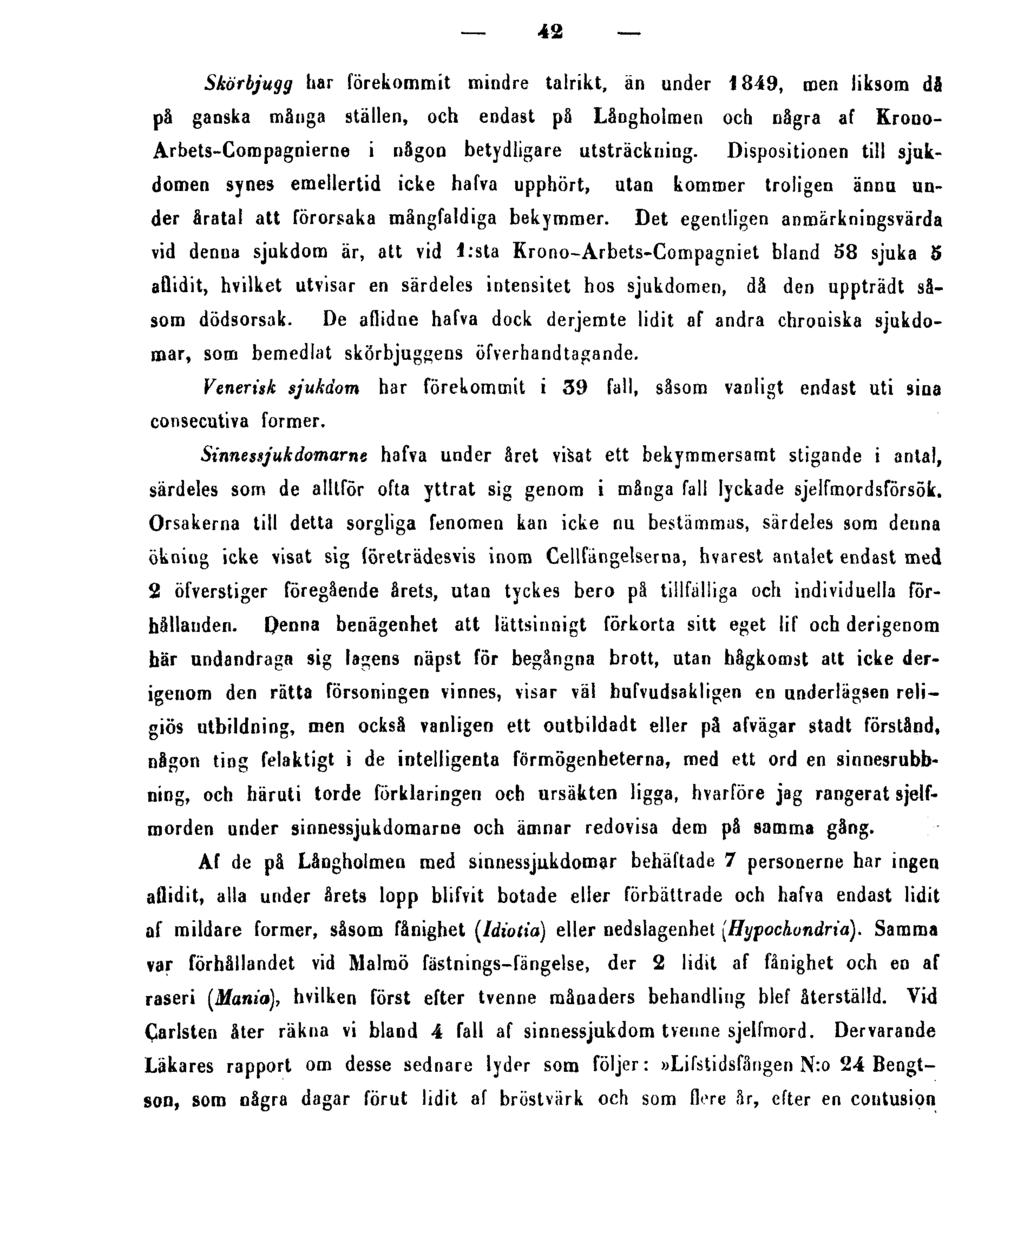 42 Skörbjugg har förekommit mindre talrikt, än under 1849, men liksom di på ganska många ställen, och endast på Långholmen och några af Krouo- Arbets-Compagnierne i någon betydligare utsträckning.